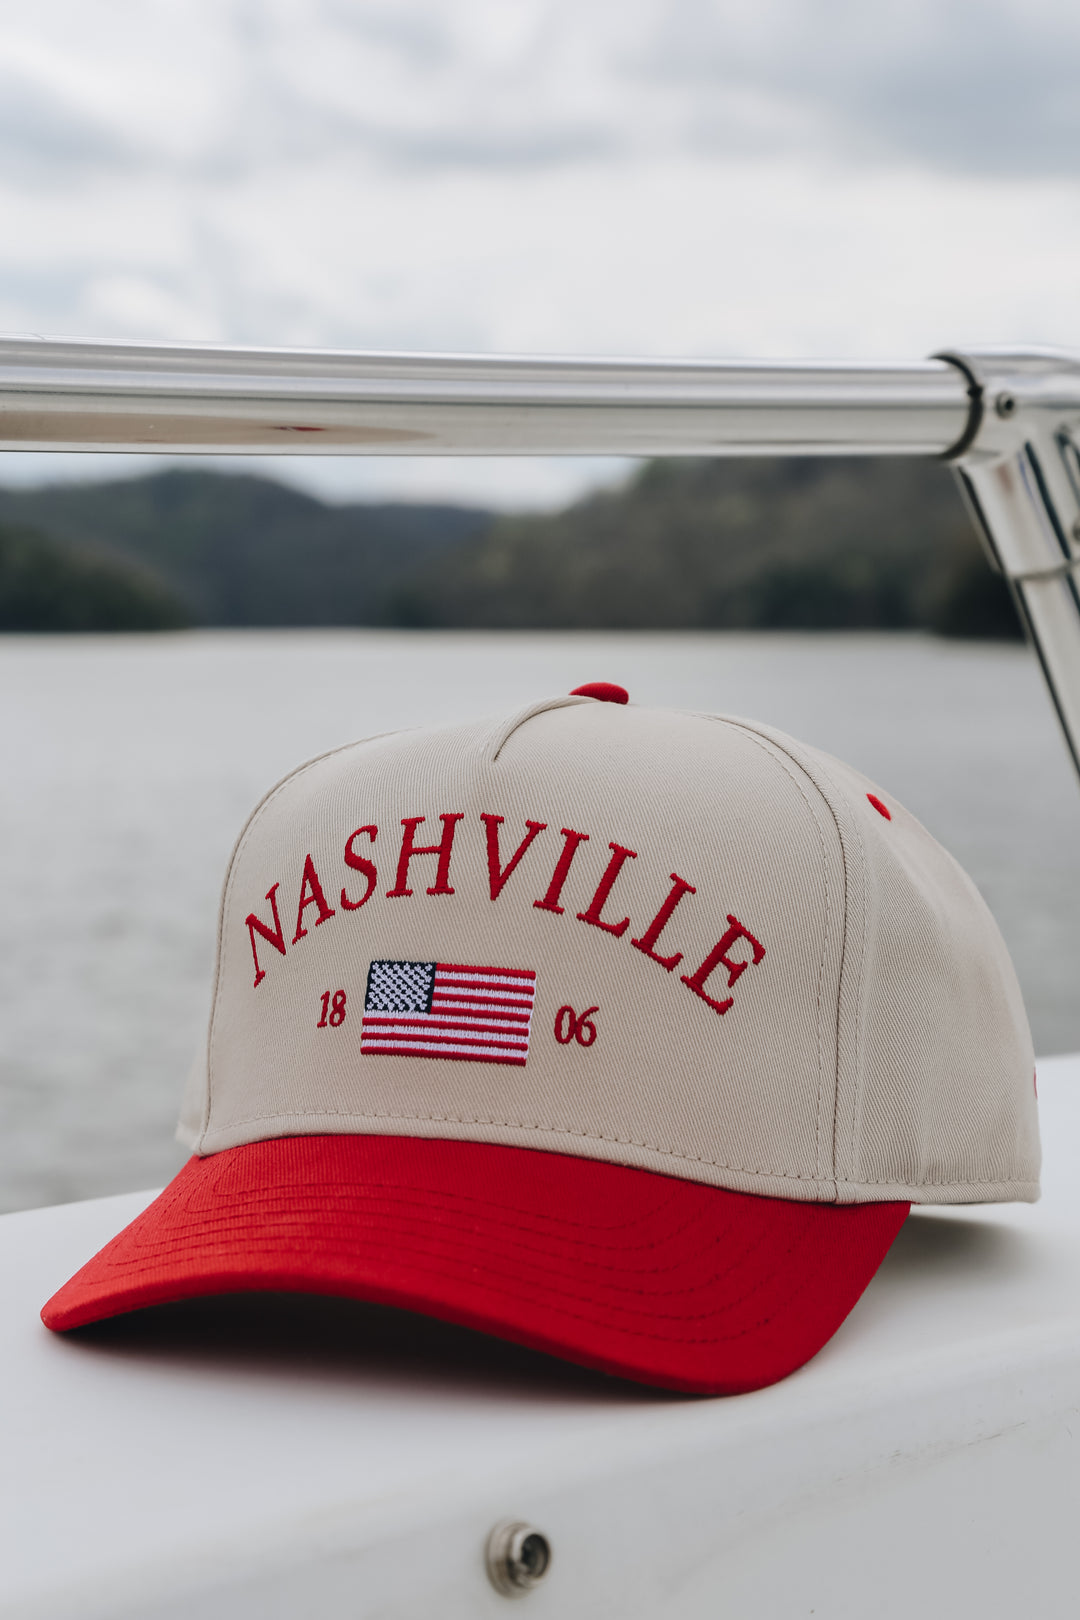 Nashville Flag Snapback [PRE-ORDER]